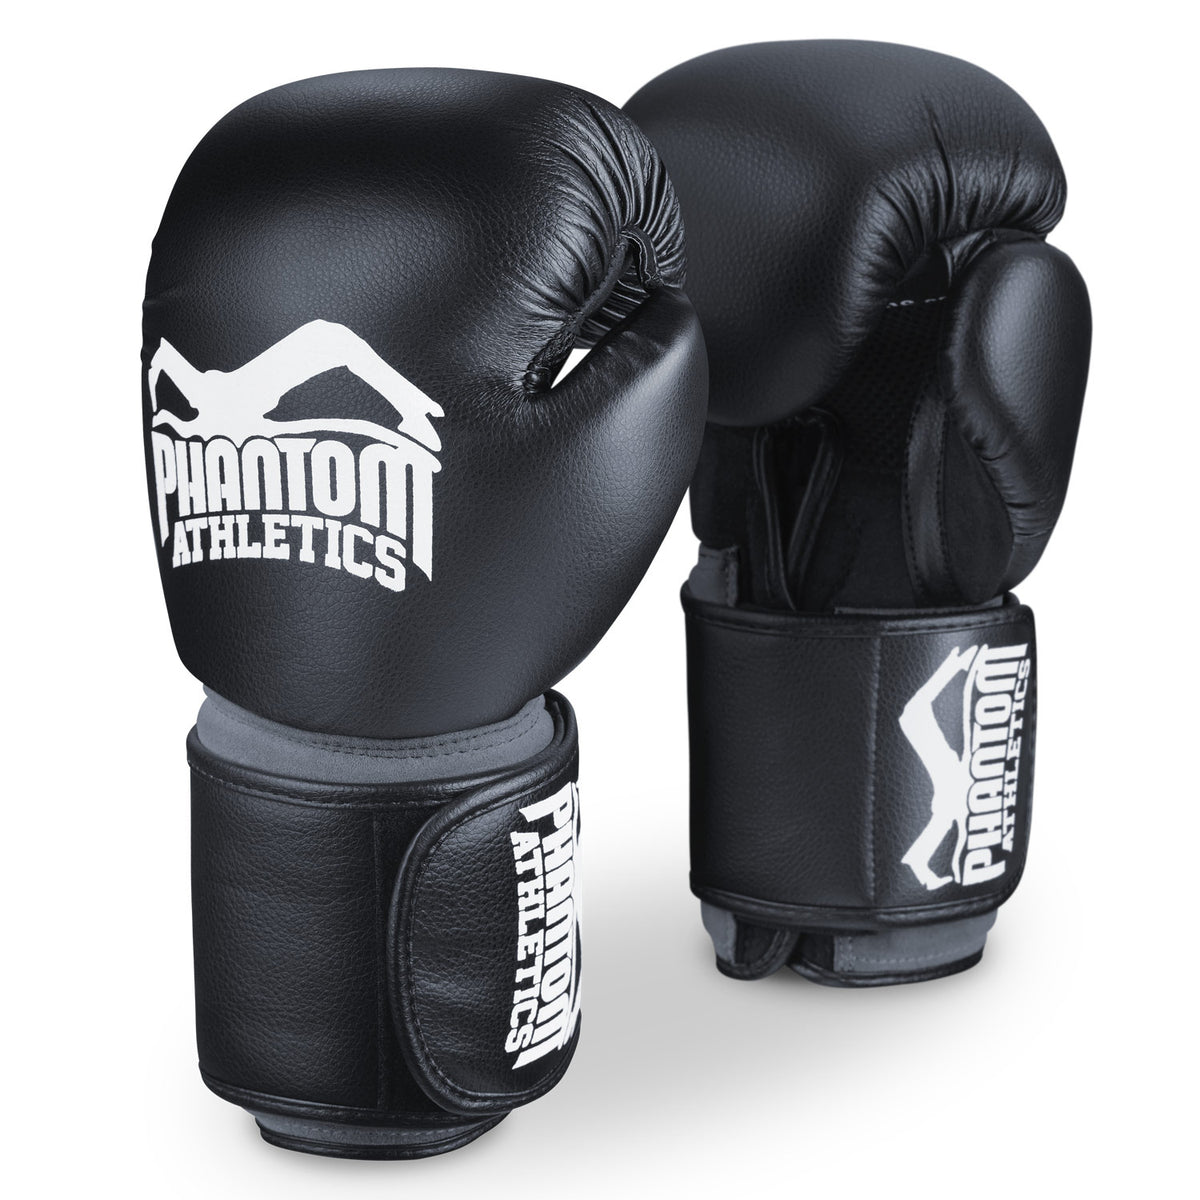 Die Boxhandschuhe Phantom Elite ATF gehören zu den Topmodellen und bieten umfassenden Schutz der Hände.